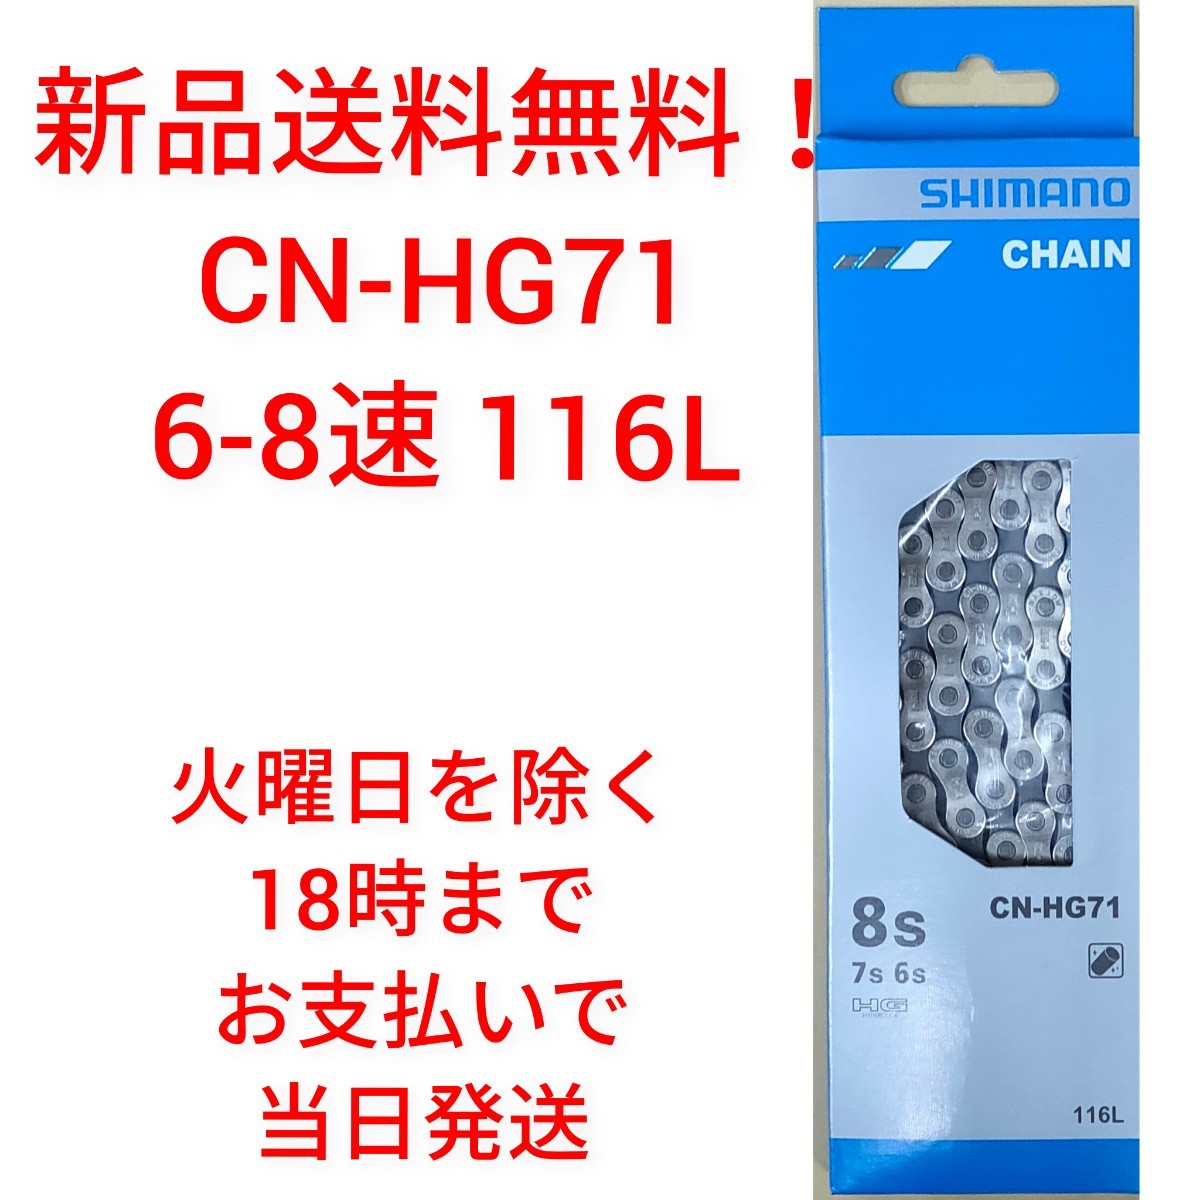 【新品送料無料】 チェーン CN-HG71 シマノ 6-8速 SHIMANO 1161 CNHG71 ICNHG71116I ギア 自転車 【関連】 CN-HG40 KMC simanoの画像1